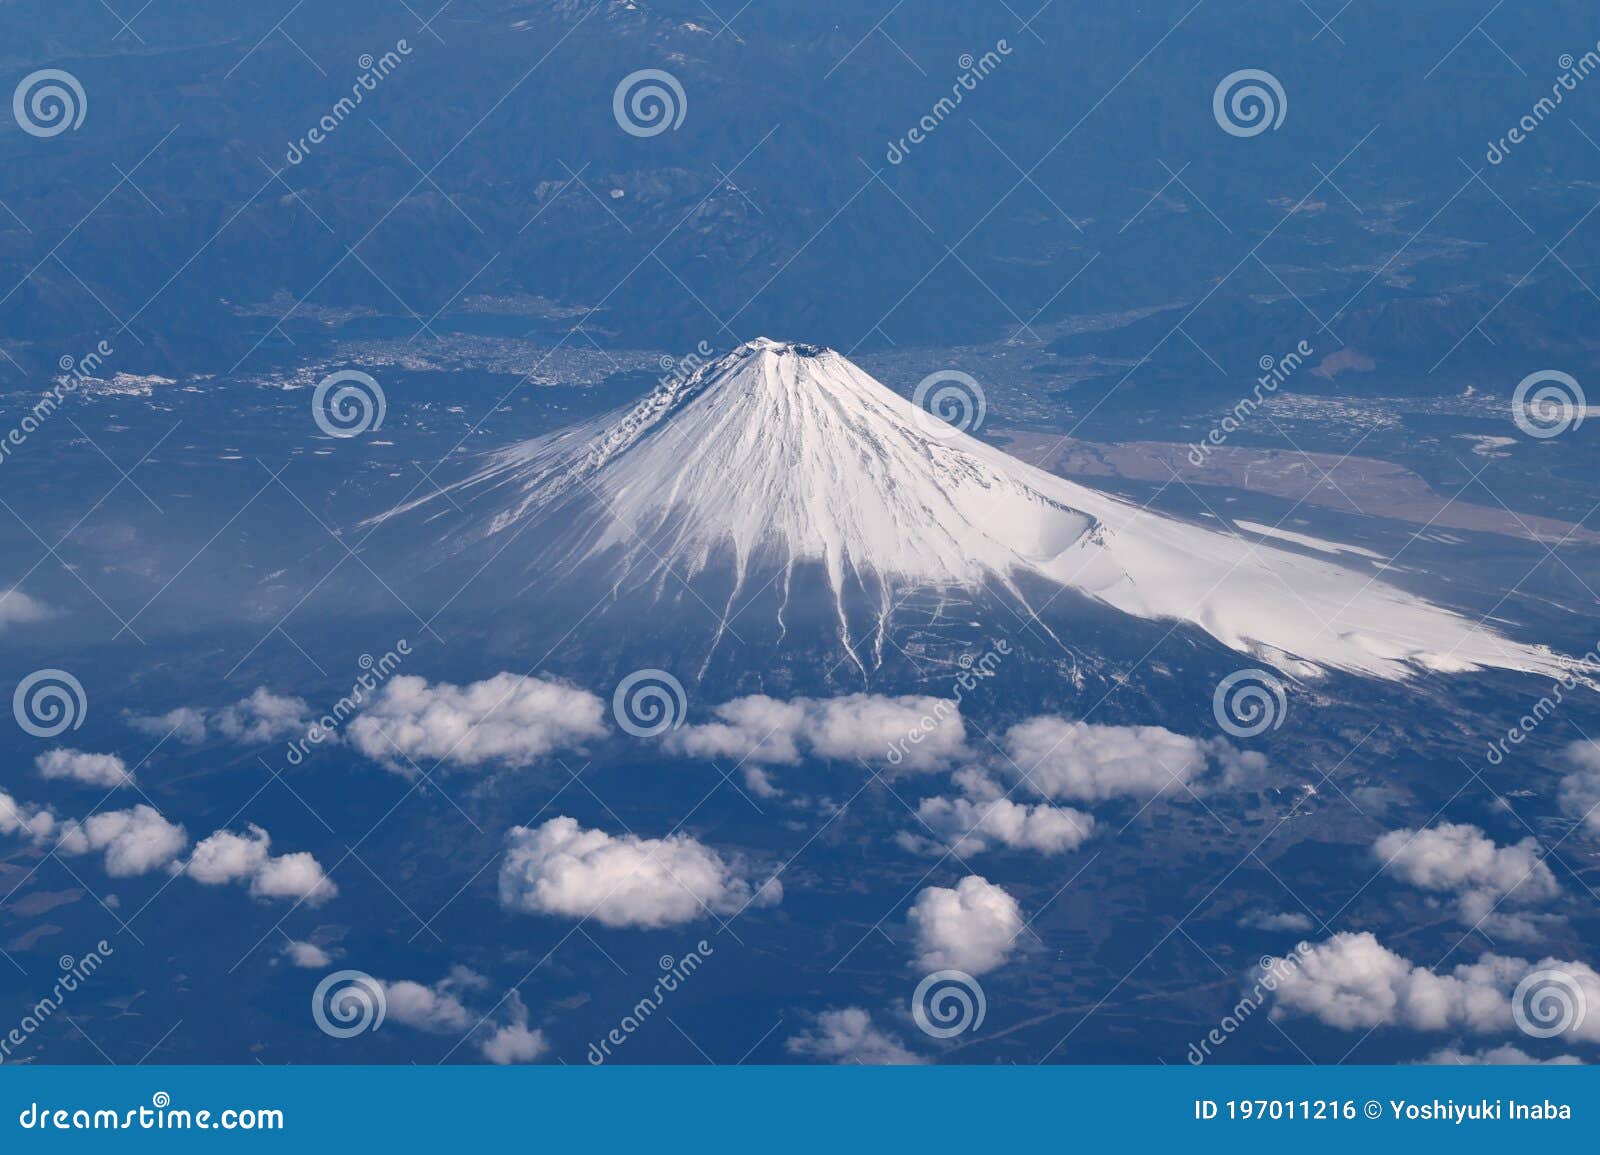 Mt. Fuji from a Birds-eye View Stock Photo - Image of mountain, fuji ...